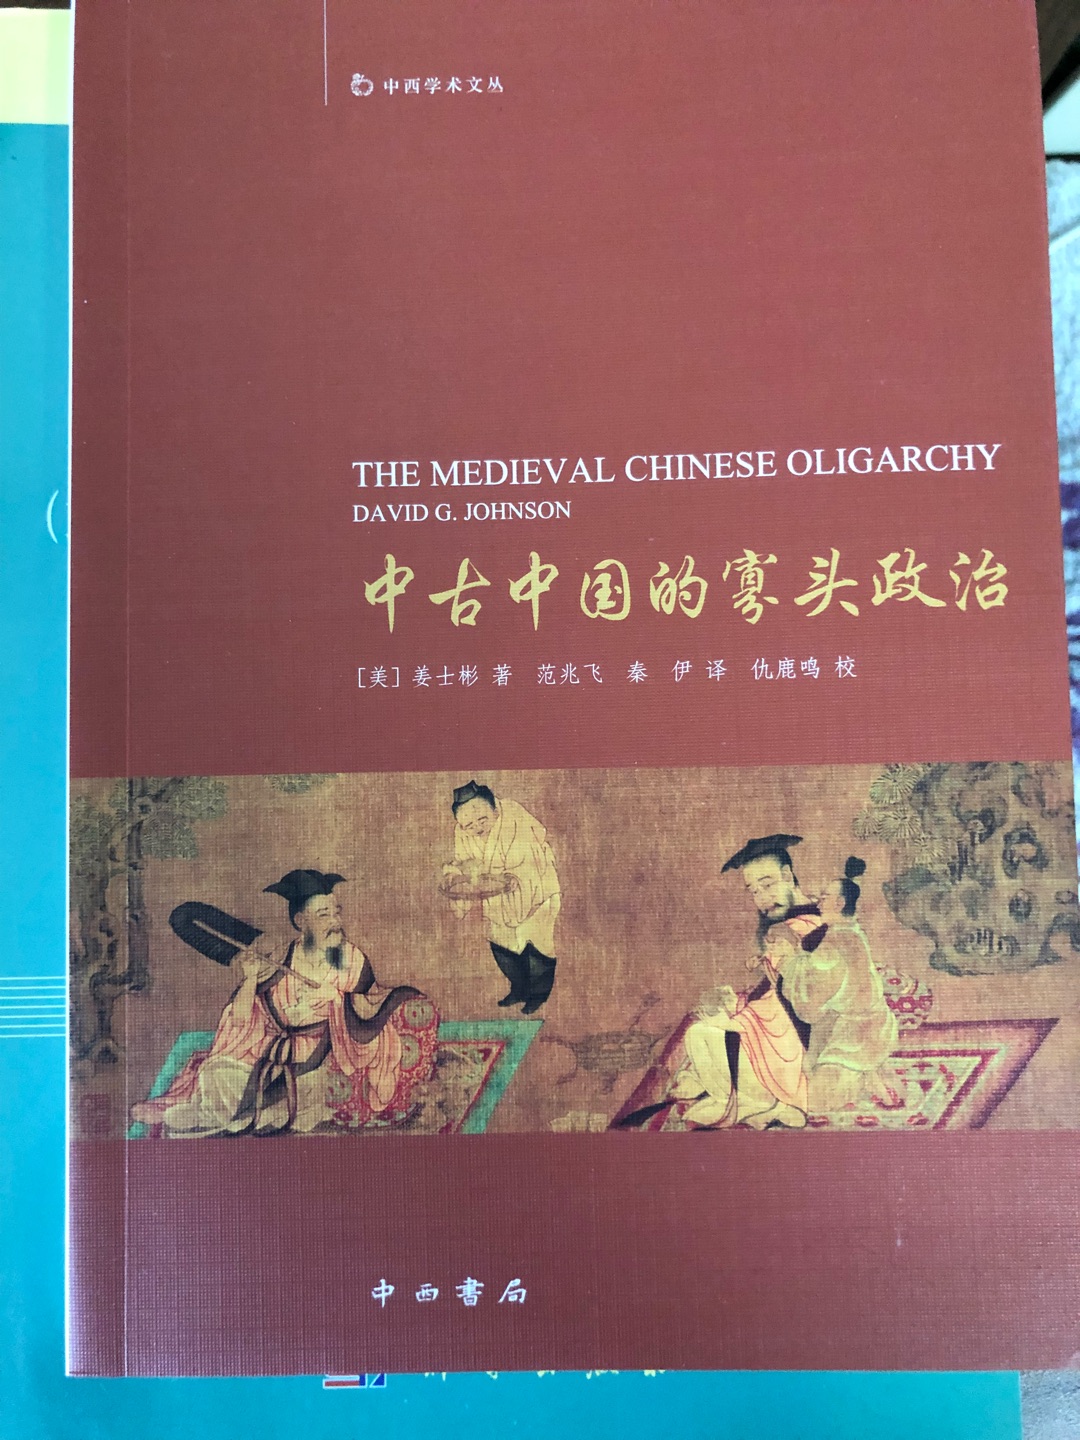 姜士彬先生的《中古中国的寡头政治》一书，不仅是西方汉学界较早系统研究中国中古时期社会结构，尤其是上层统治阶层的开拓性研究之一，而且也以其“寡头阶层”的结论对前贤的“贵族阶层”论断进行了反思，认为中古中国是贵族政治与官僚政治的结合。